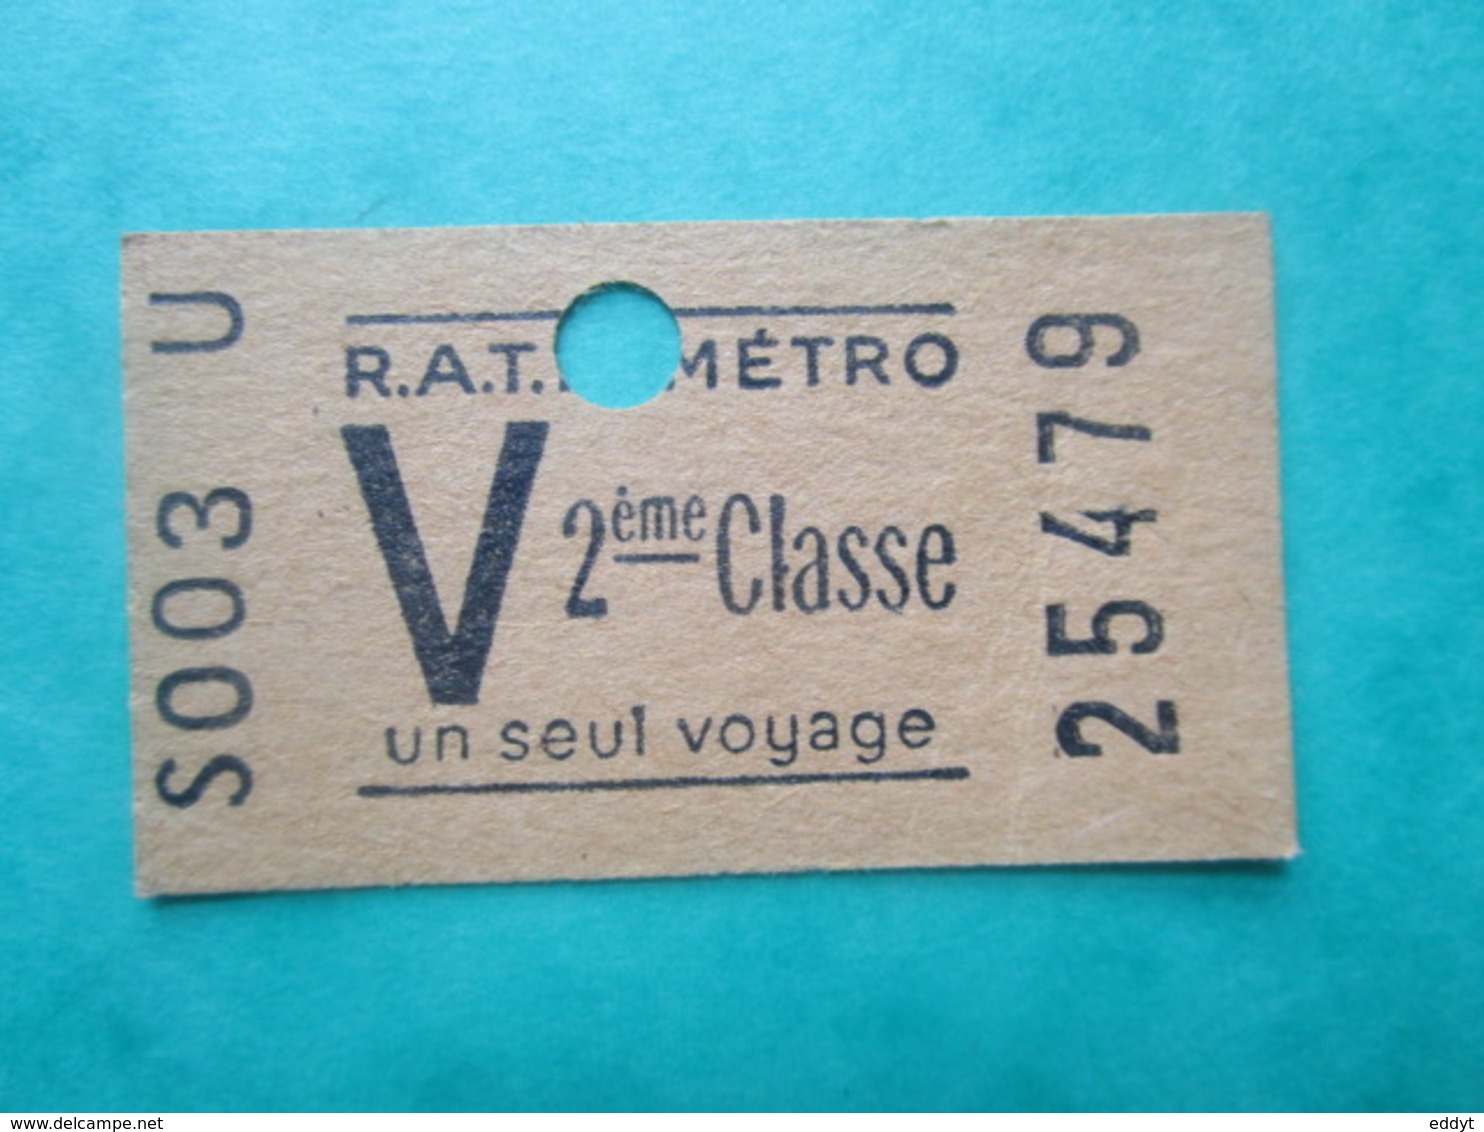 TICKET  Métro  RATP  PARIS " V "  - 2° Classe - UN SEUL VOYAGE   - 1958 - TBE - Monde